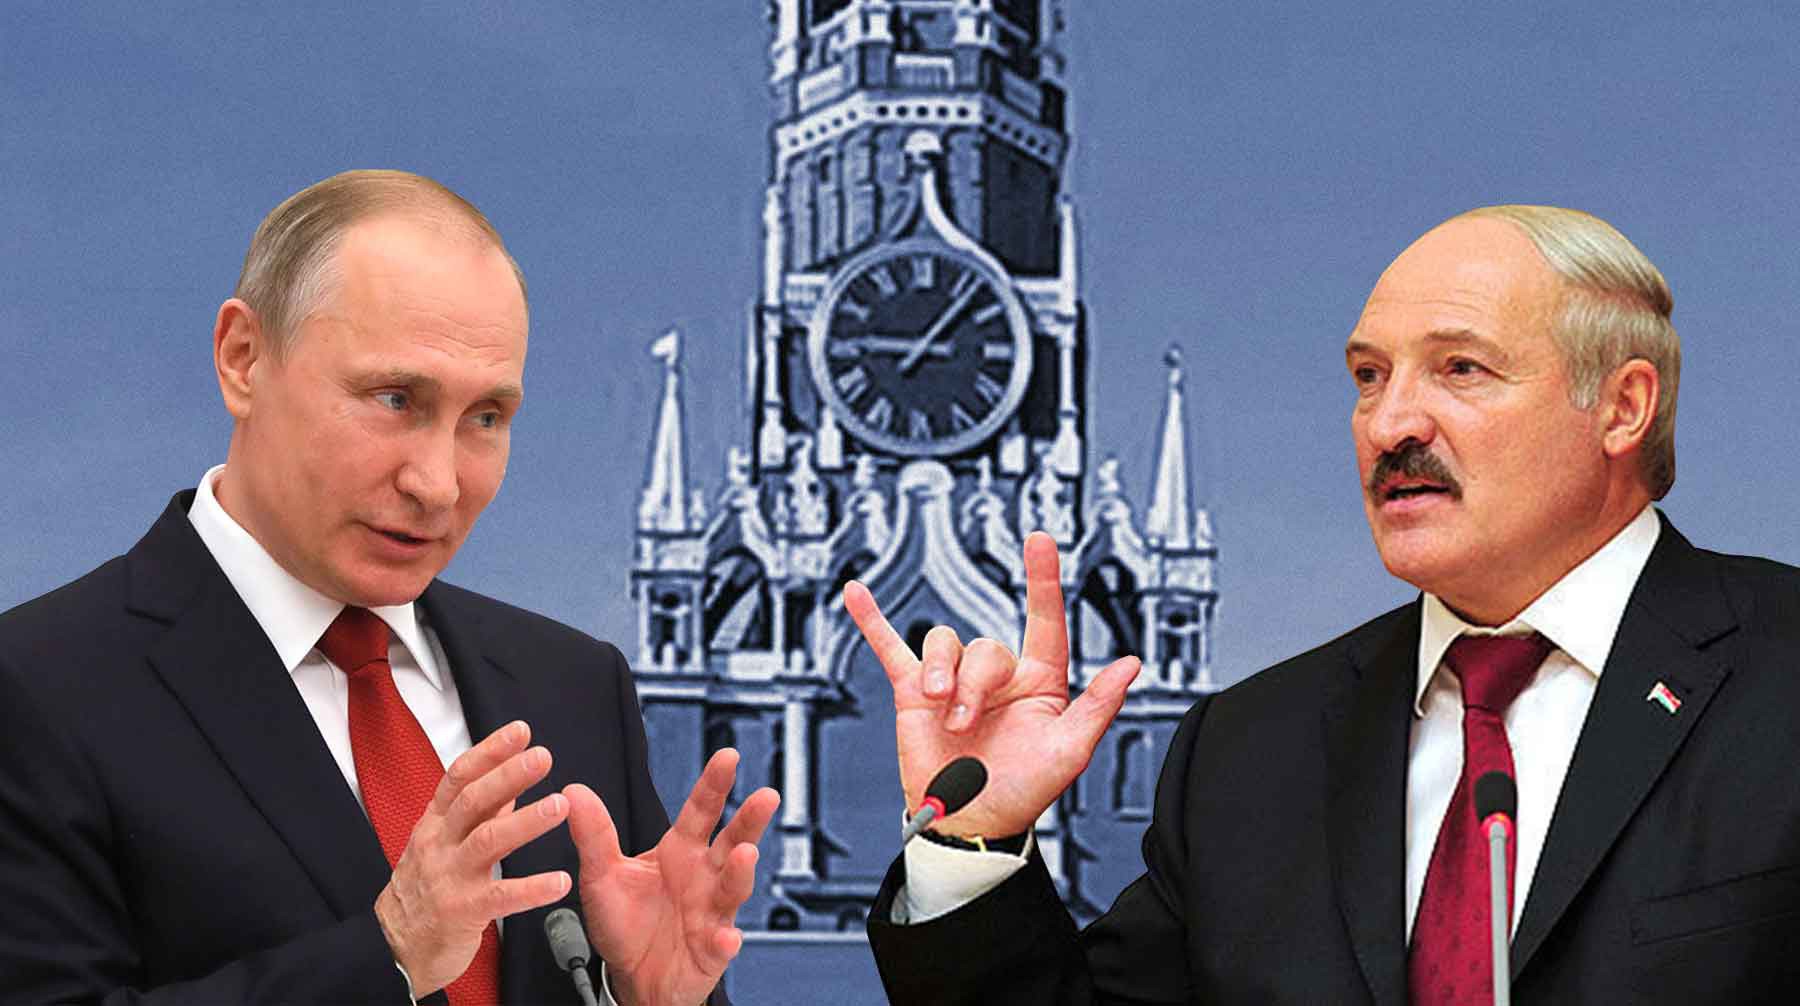 Dailystorm - 20 лет на месте. Юбилейный День единения России и Белоруссии пройдет без Путина и Лукашенко